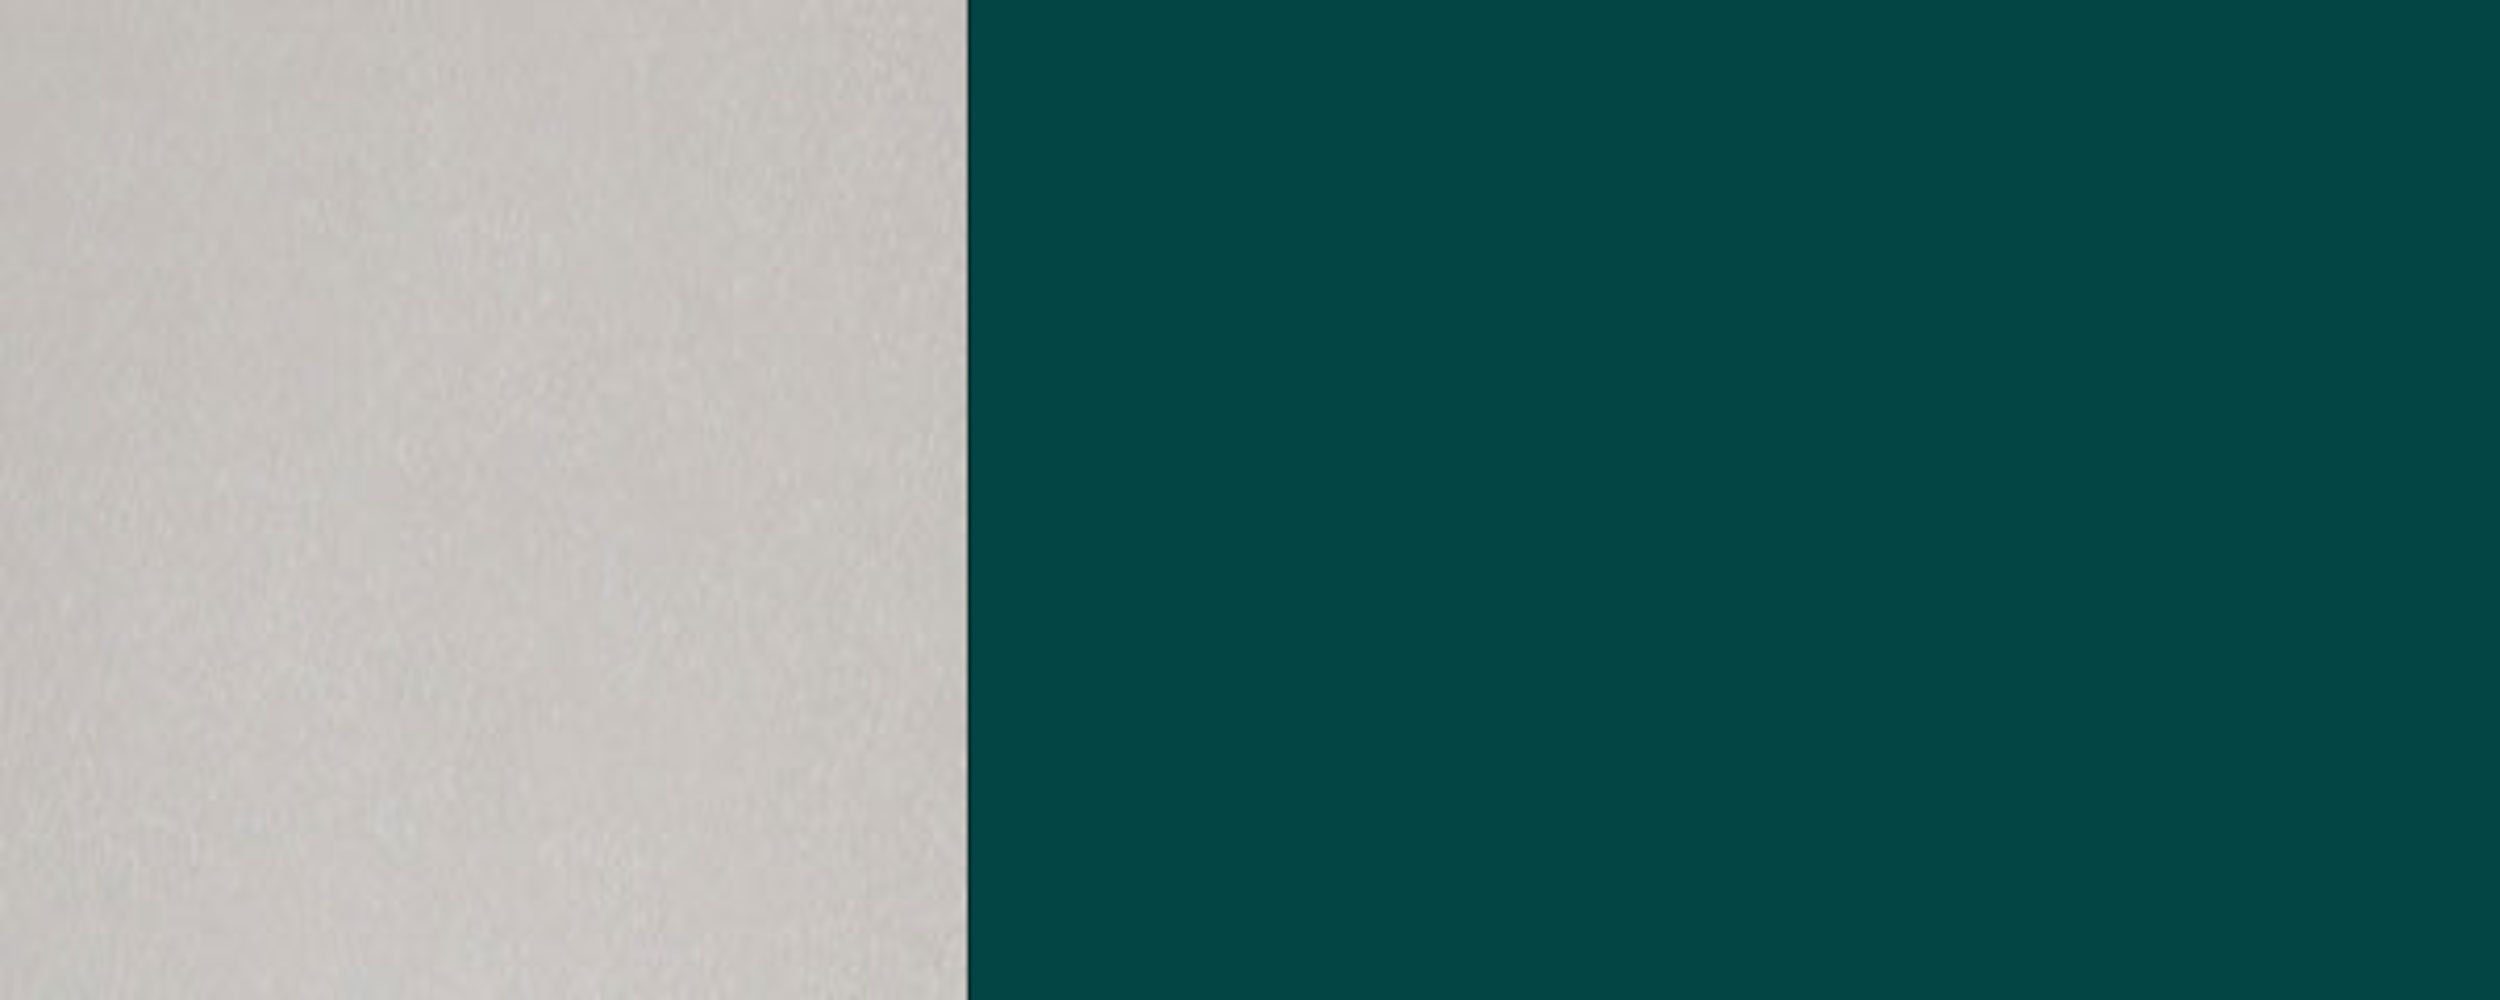 blaugrün RAL Klapphängeschrank 45cm Feldmann-Wohnen (Rimini) Front- 1-türig matt Korpusfarbe wählbar und Rimini 6004